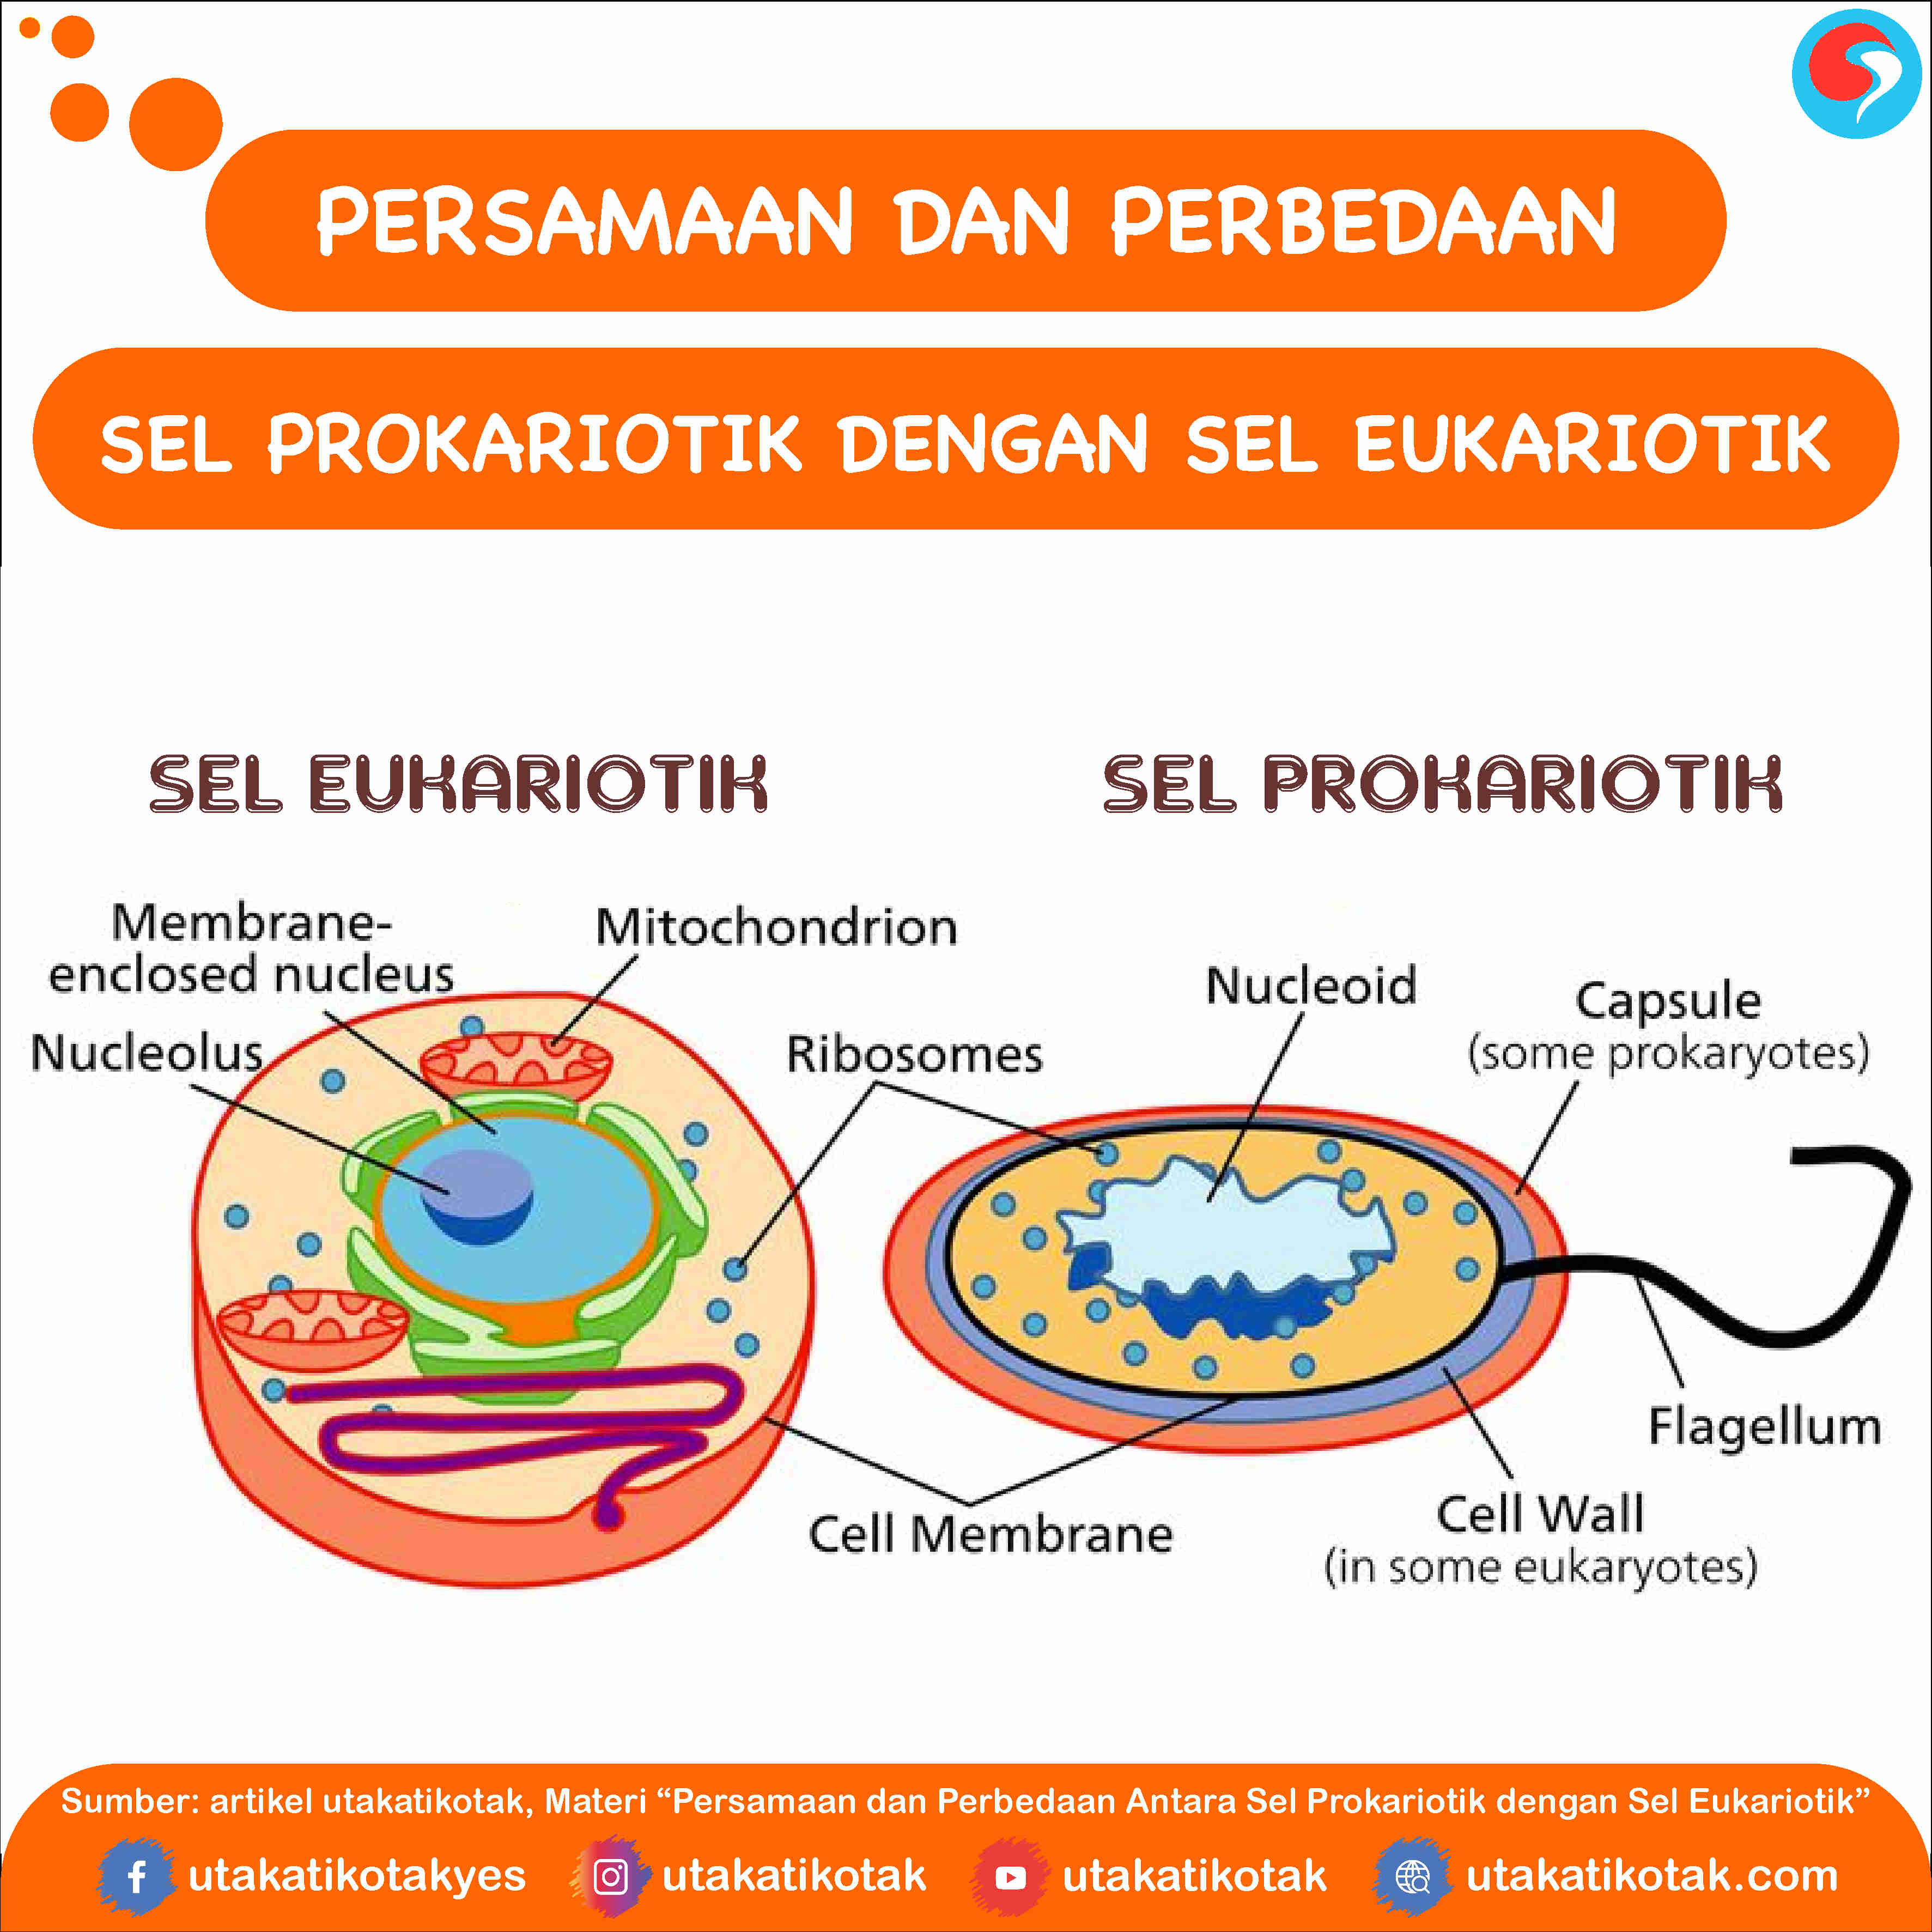 Persamaan dan Perbedaan Antara Sel Prokariotik dengan Sel Eukariotik